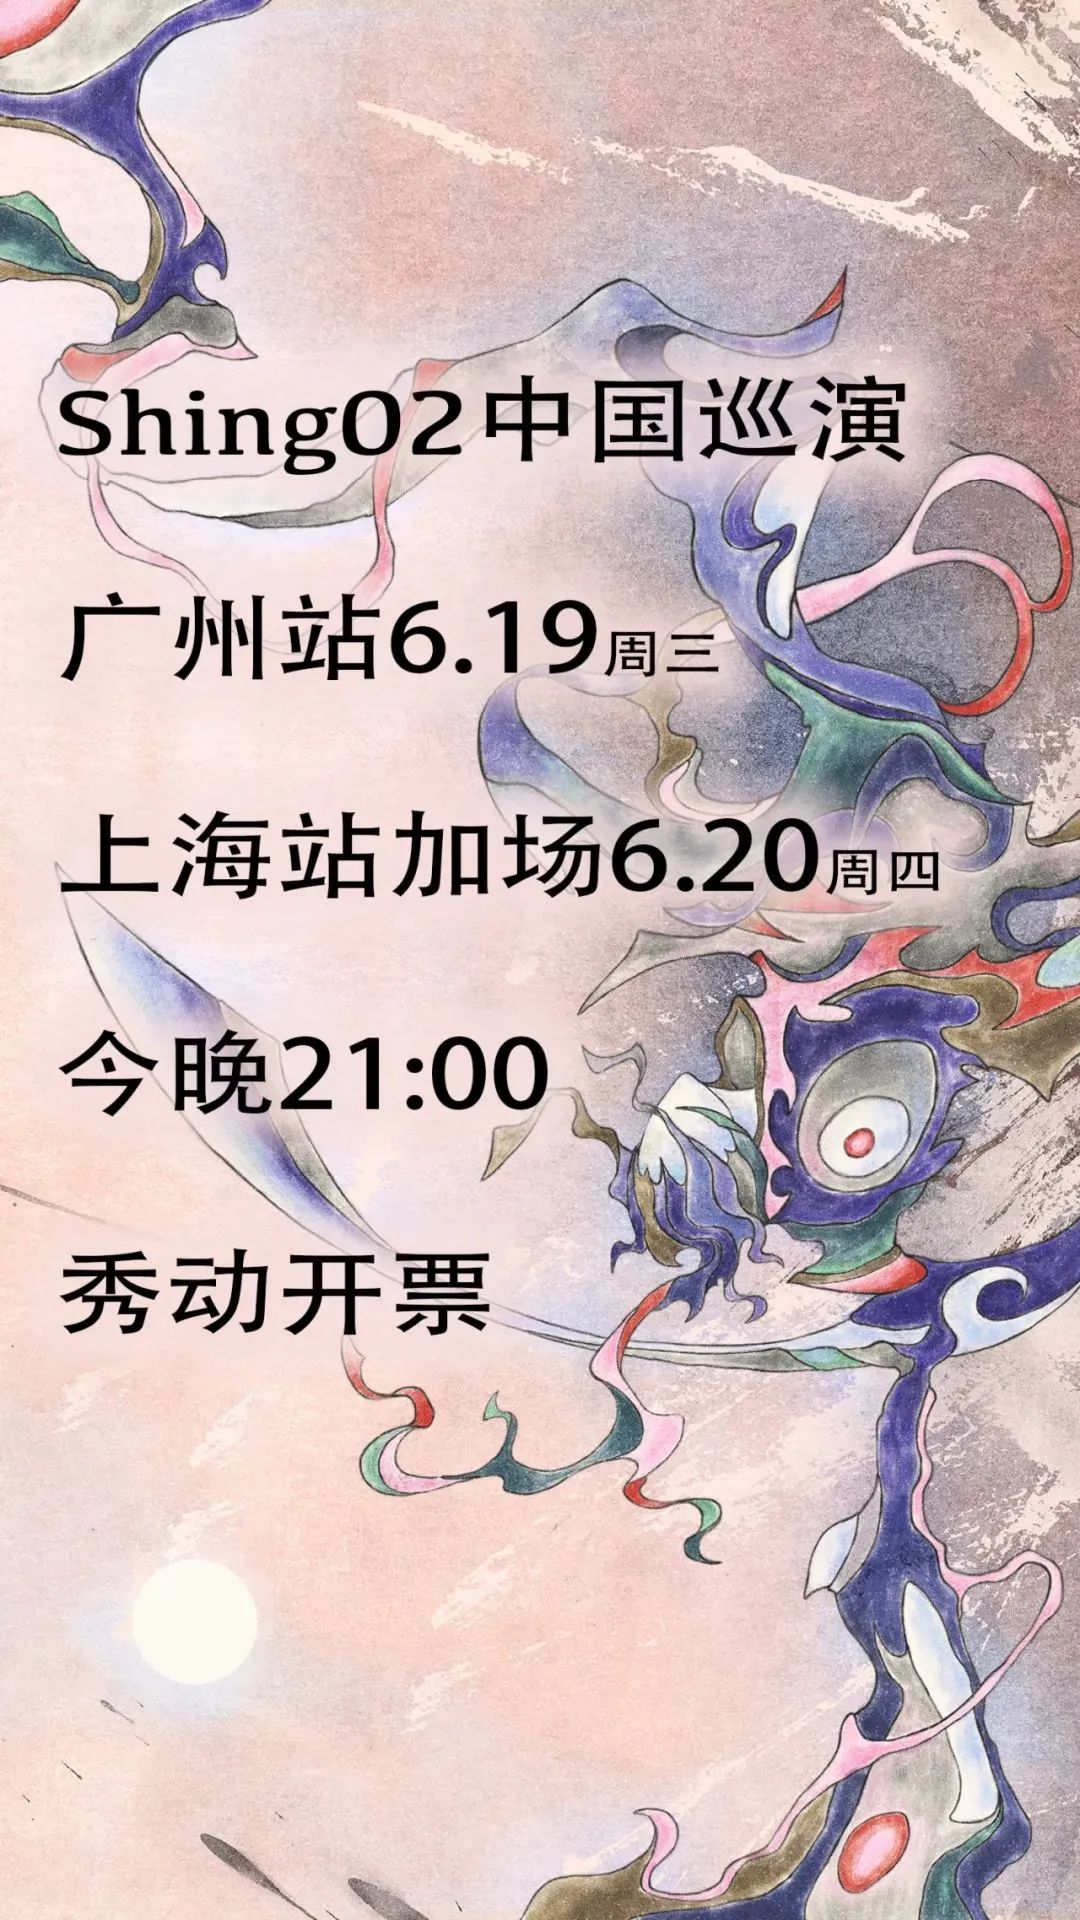 06.20 >> Shing02 中国巡演上海加场5月26日 21:00 开售